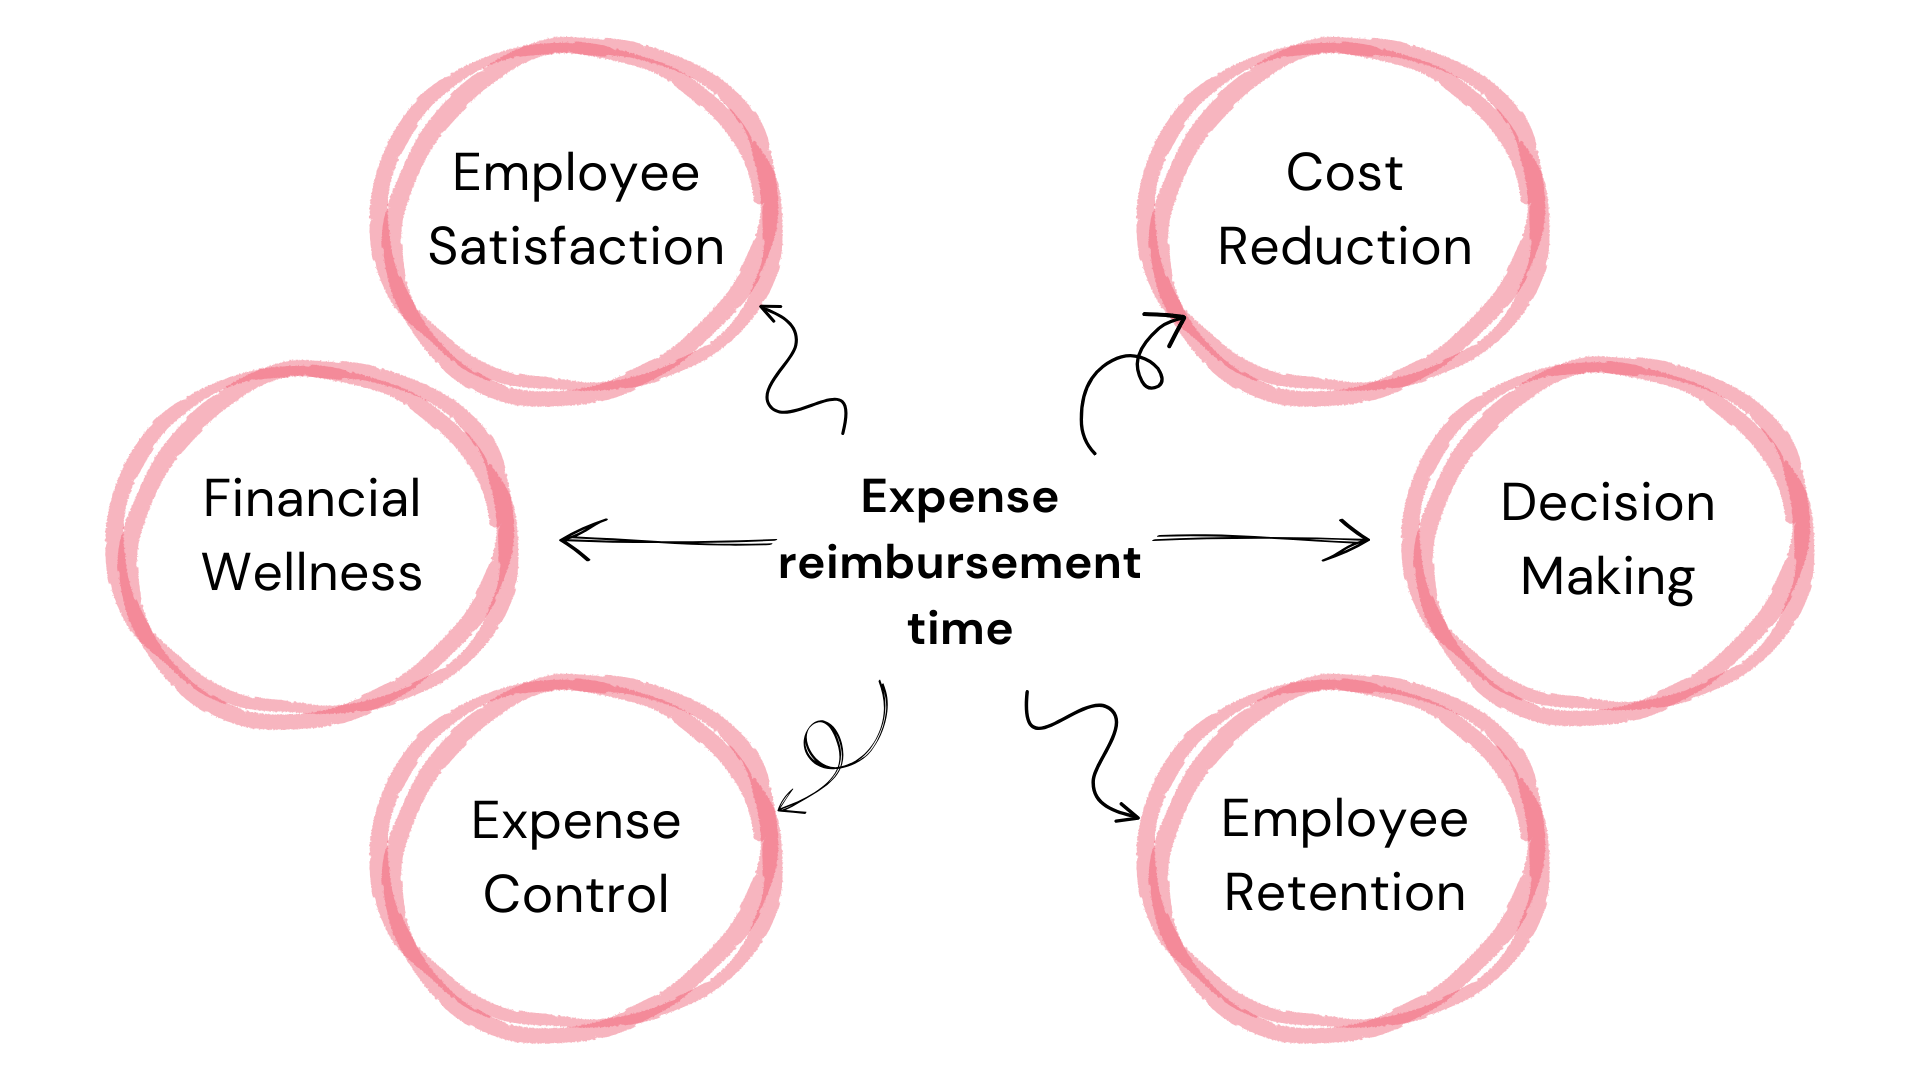 Expense reimbursement time